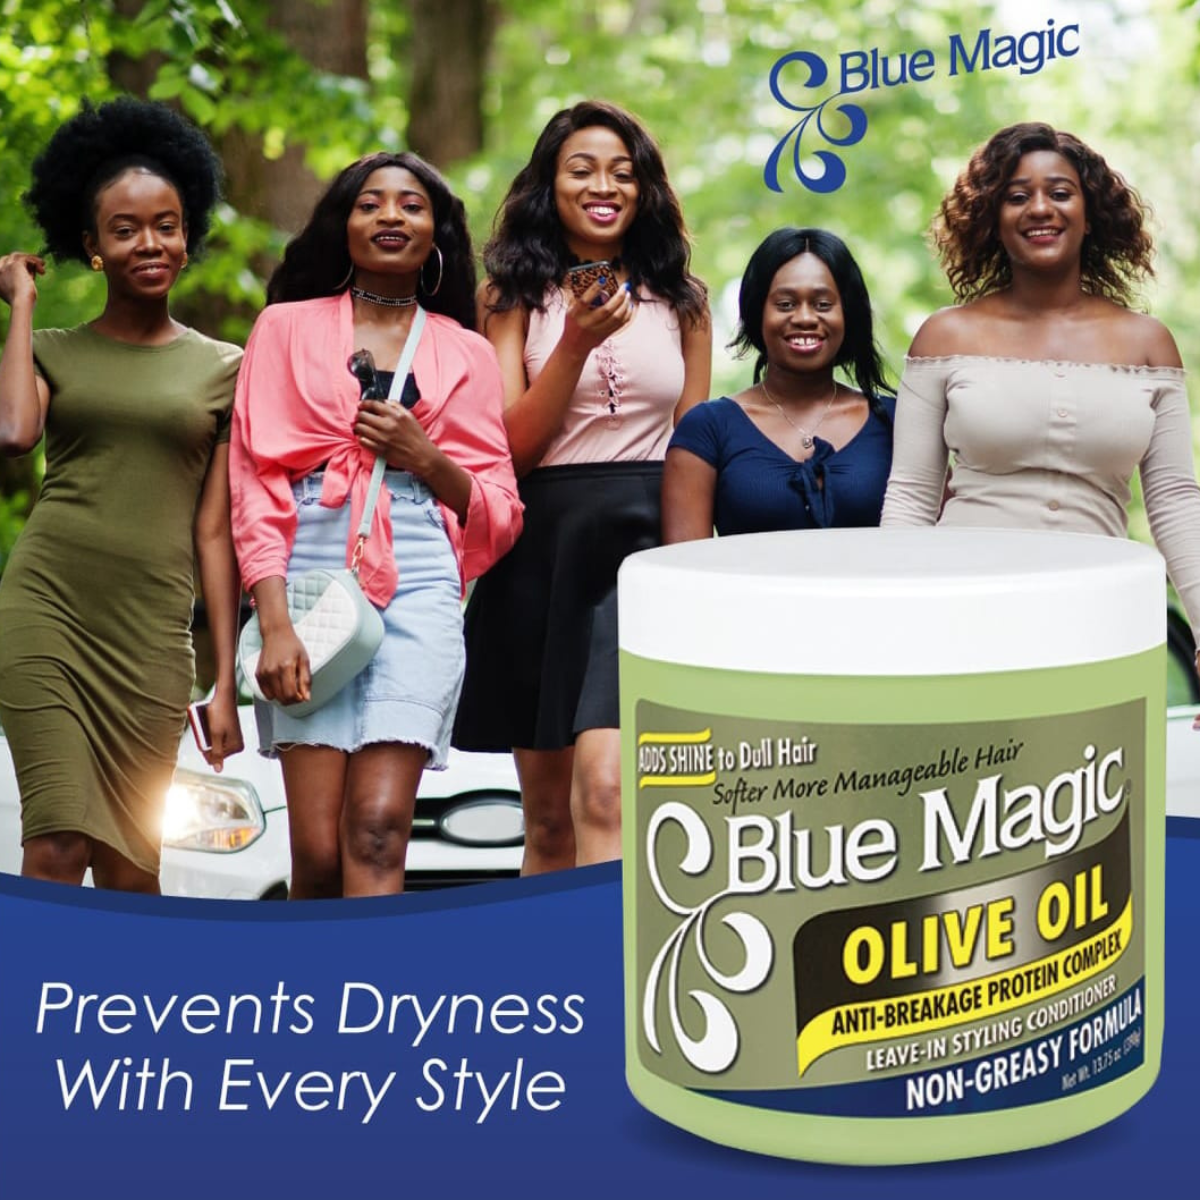 blue Magic olive oil comprar en onlineshoppingcenterg Colombia centro de compras en linea osc 2